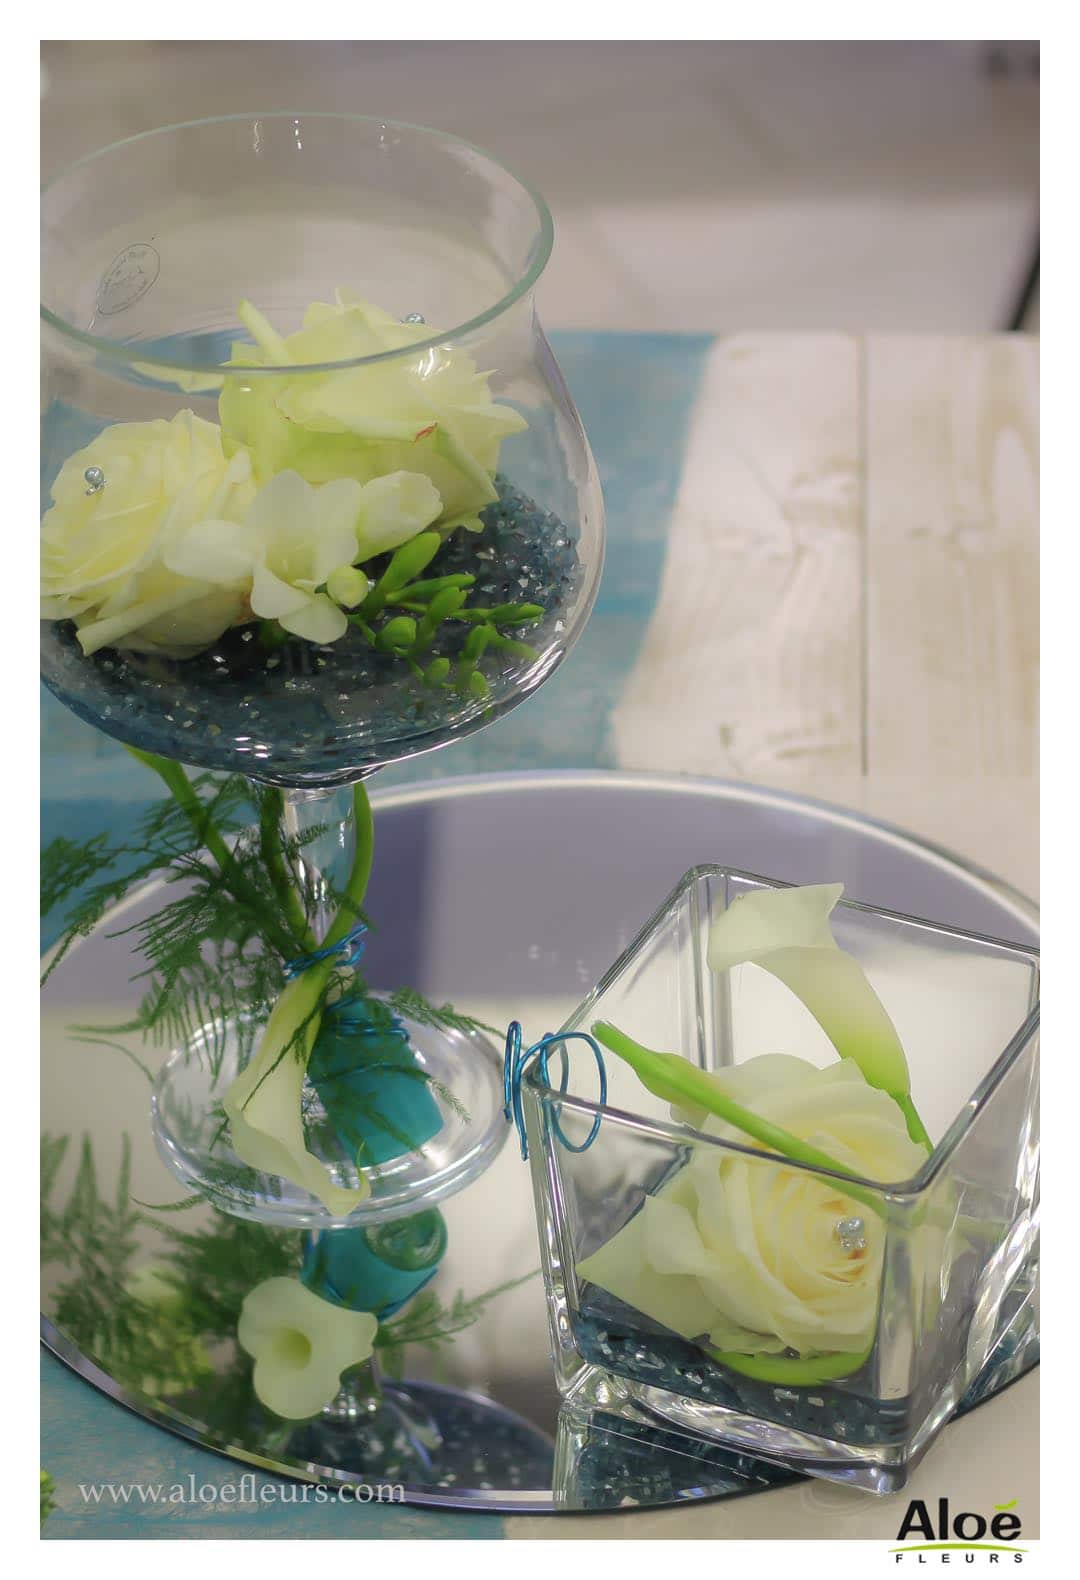 Cadre  Bouquet Mariée Original Orchidées Bleu Turquoise Rose Freesia Et Arum Blanc Aloefleurs.com  9012